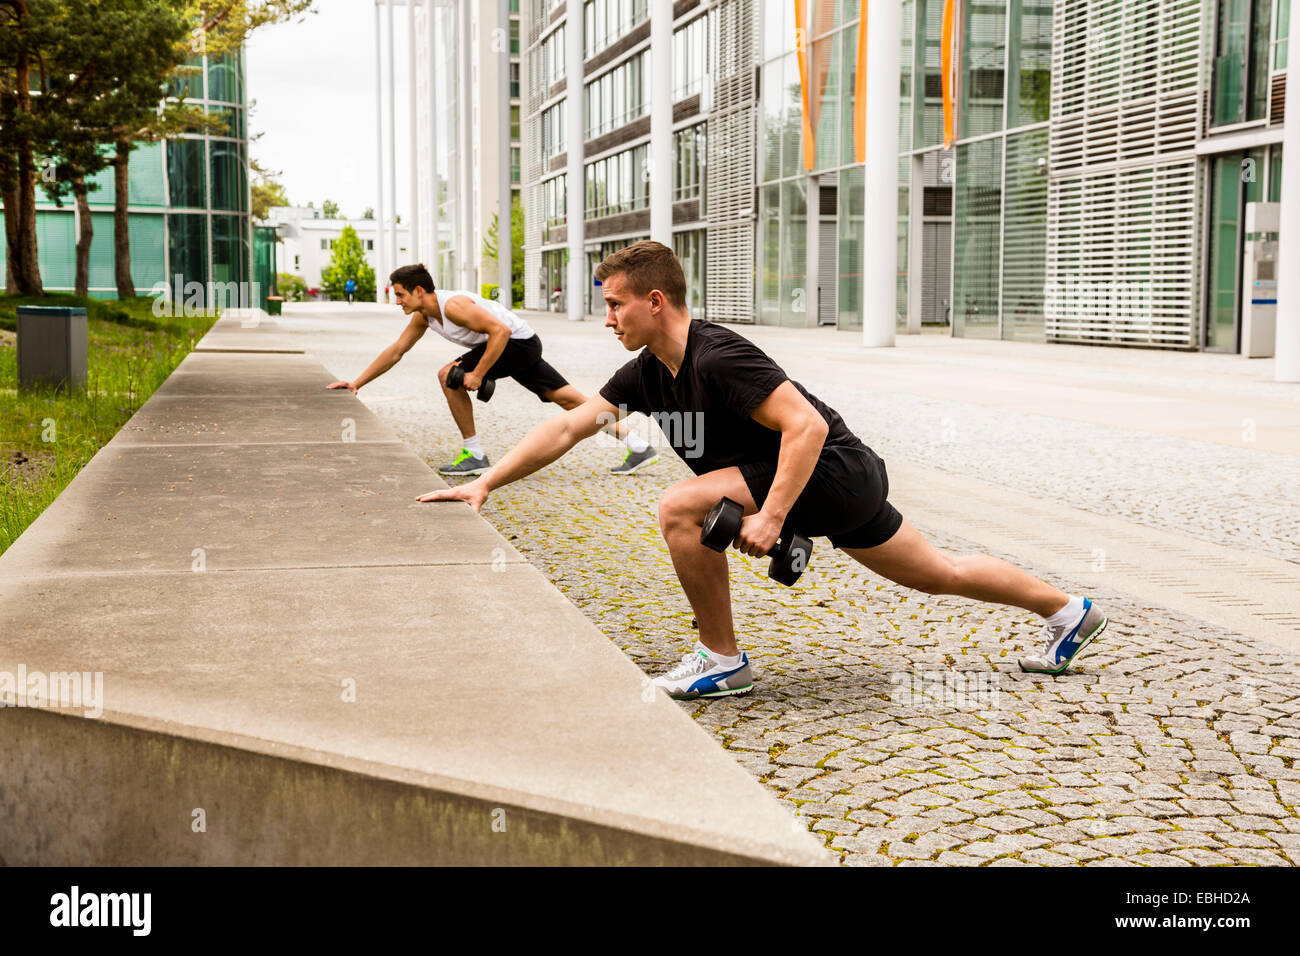 Los entrenadores personales haciendo outdoor training en urbano, Munich, Baviera, Alemania Foto de stock